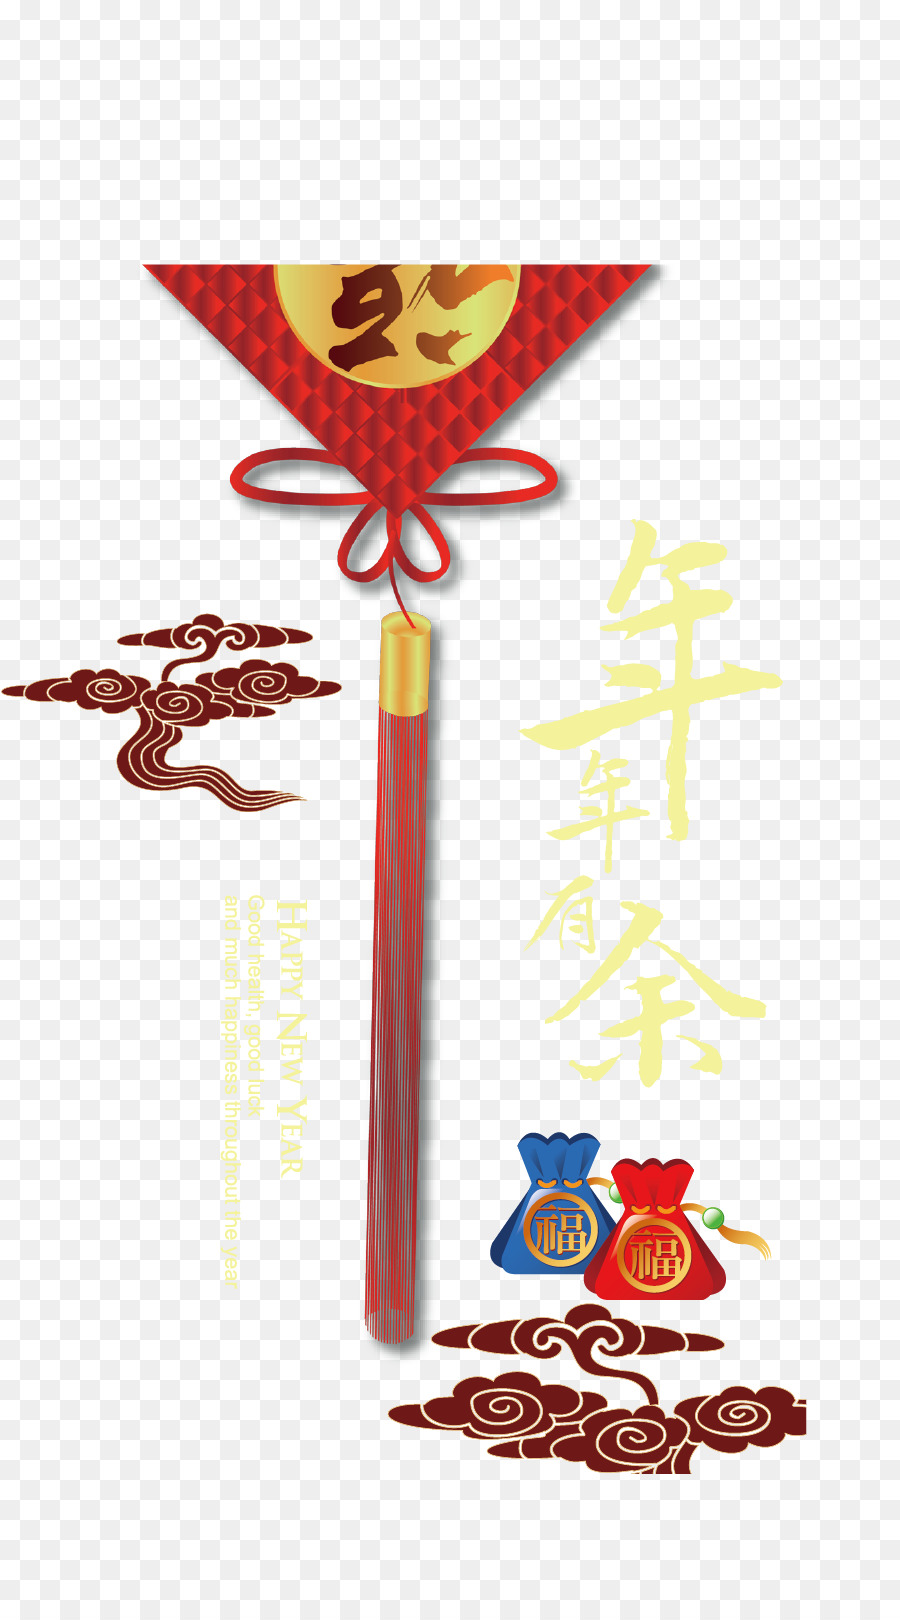 Thiệp chúc mừng Năm Mới - Chinese New Year thiệp liệu nền